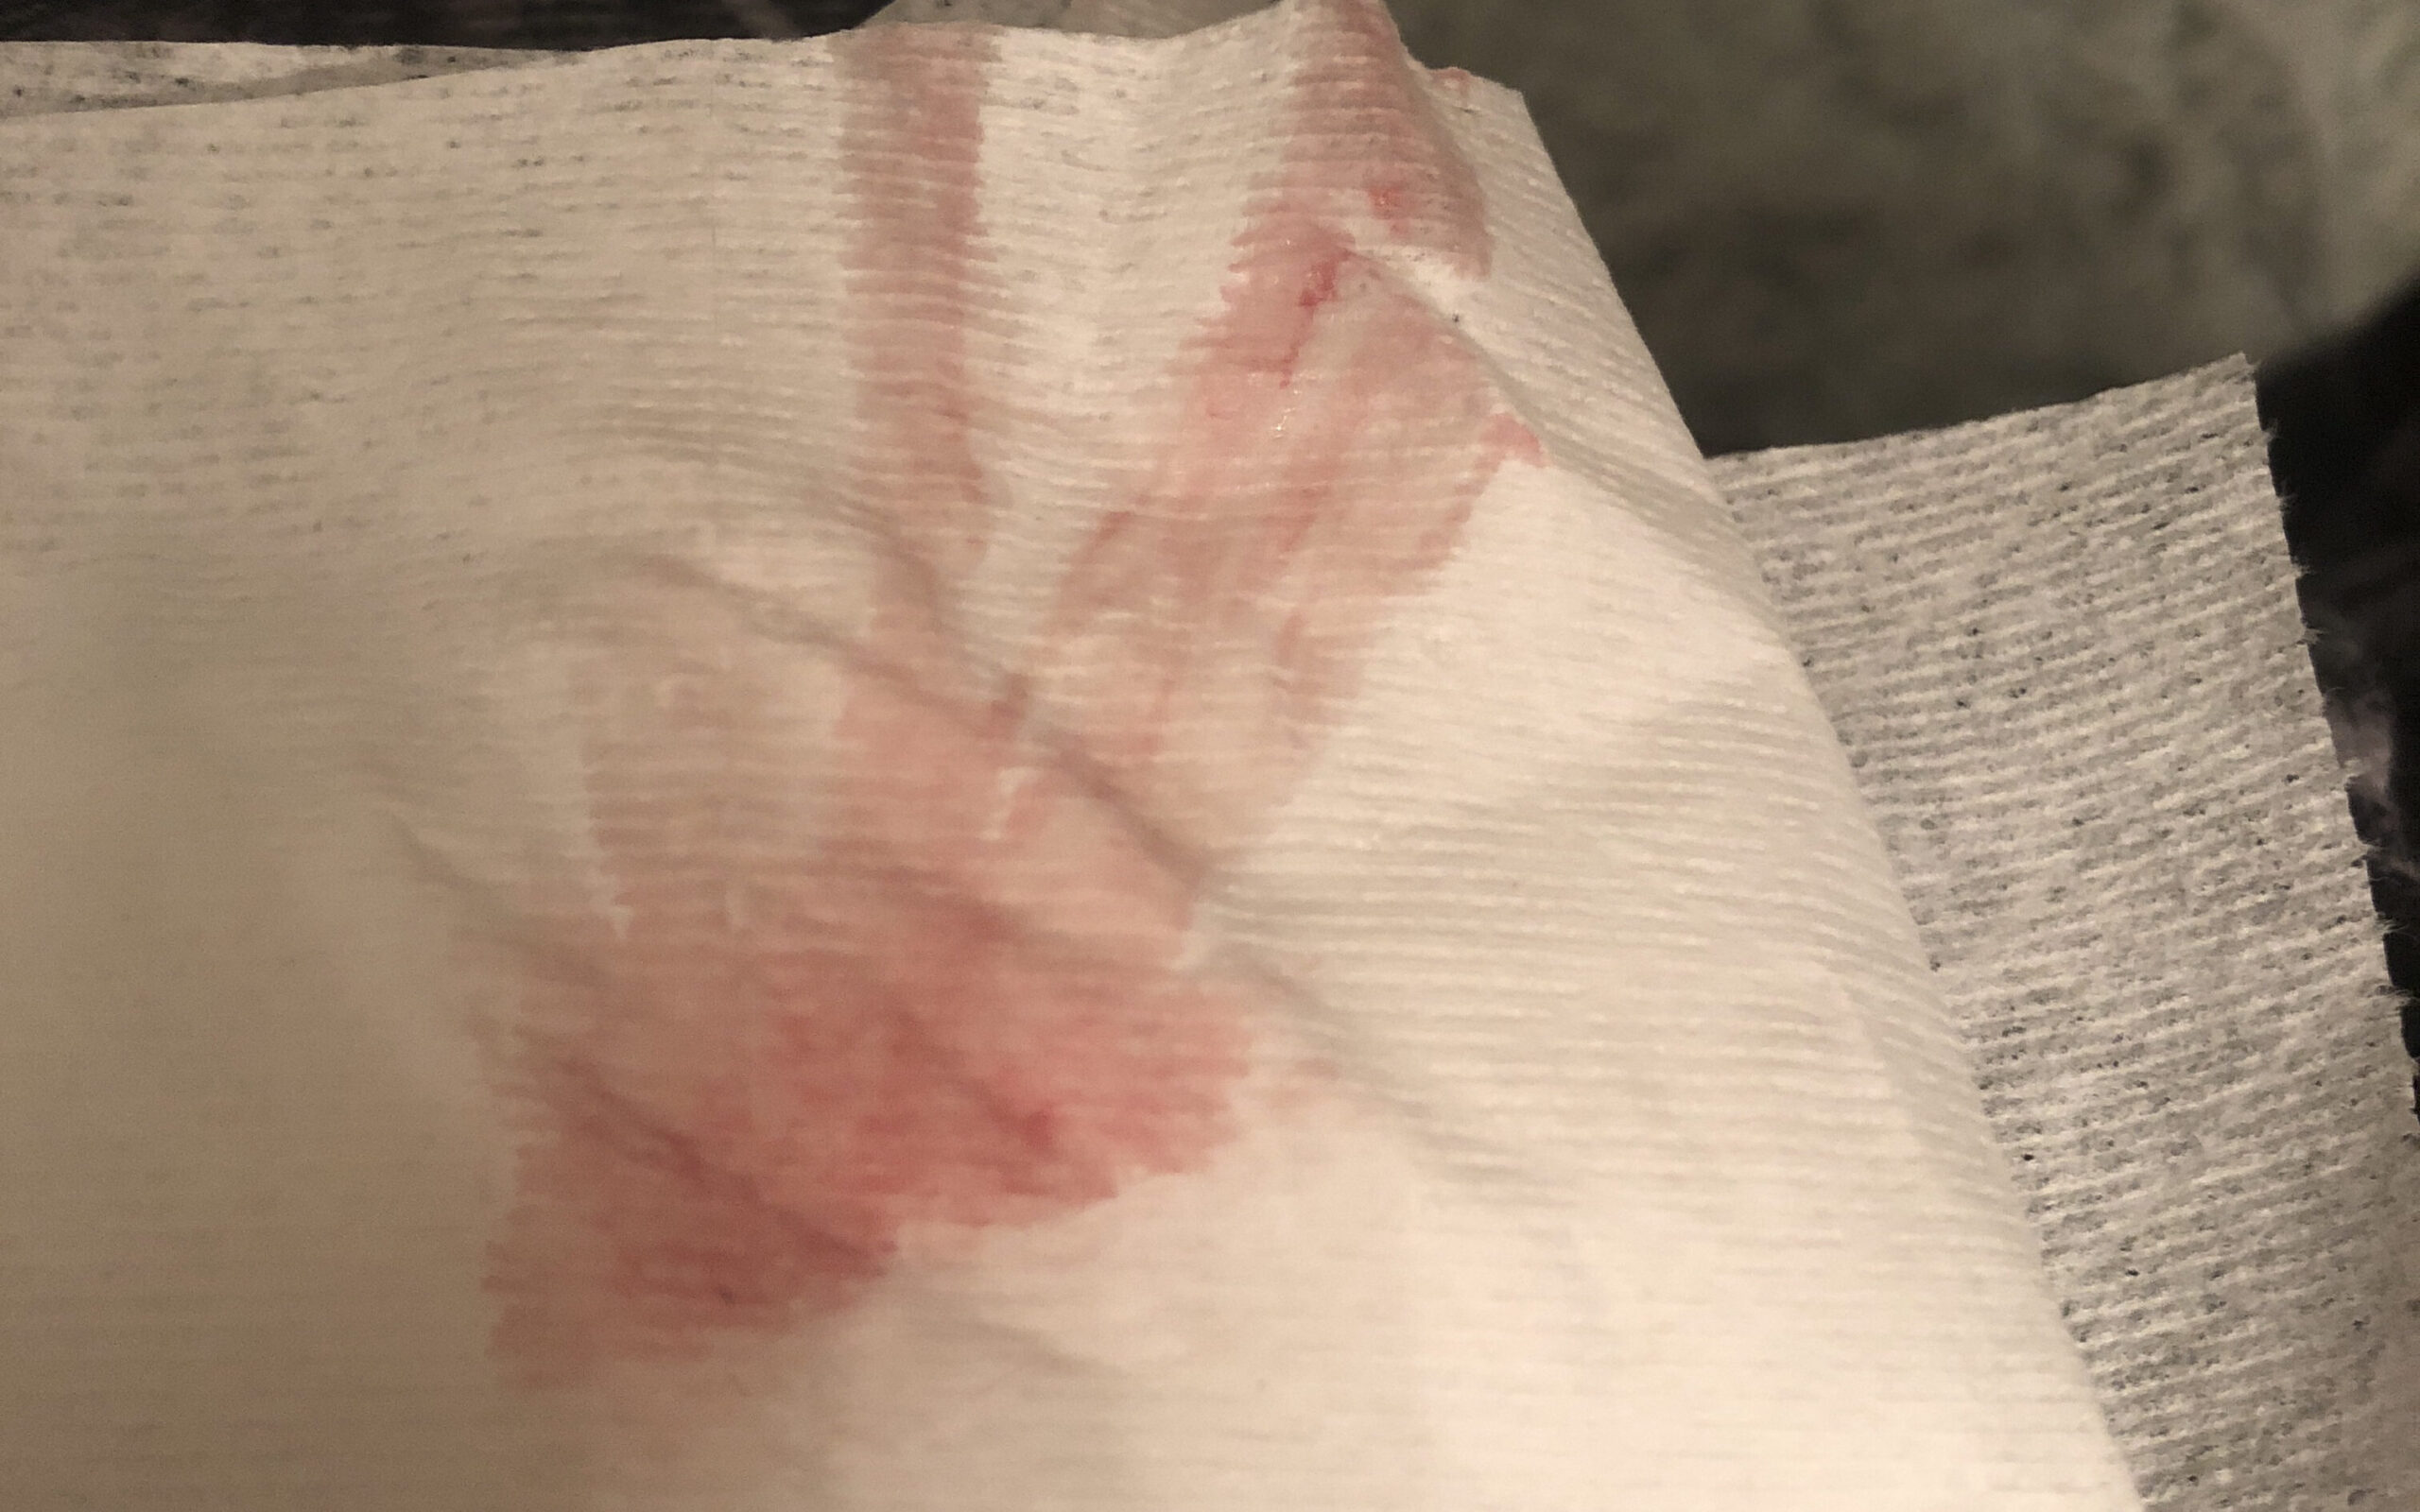 What does UTI bleeding look like